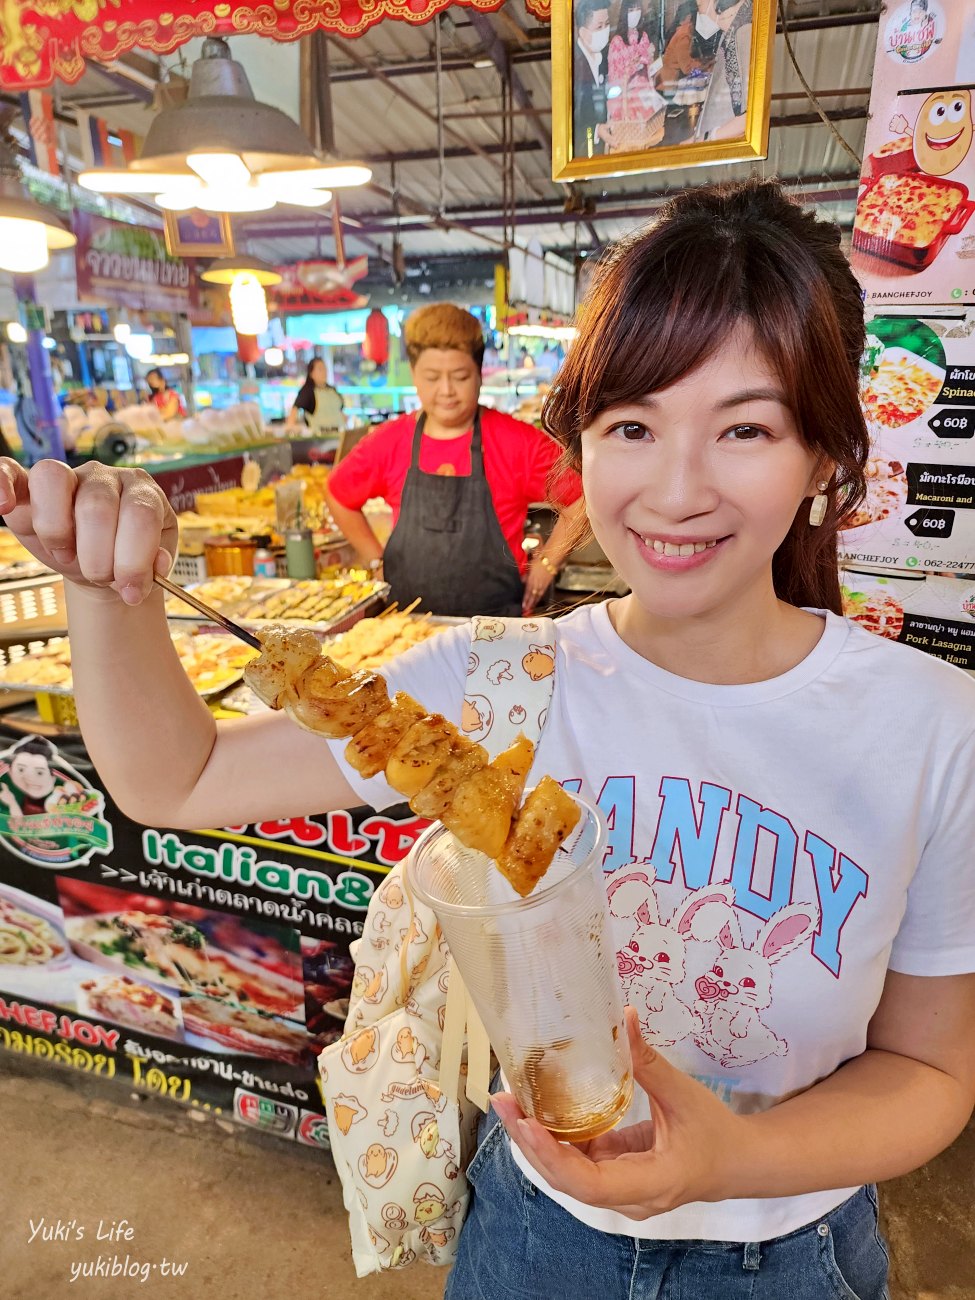 曼谷景點【空叻瑪榮水上市場】超便宜週六週日營業假日市場，好吃好買還能搭船遊河 - yuki.tw